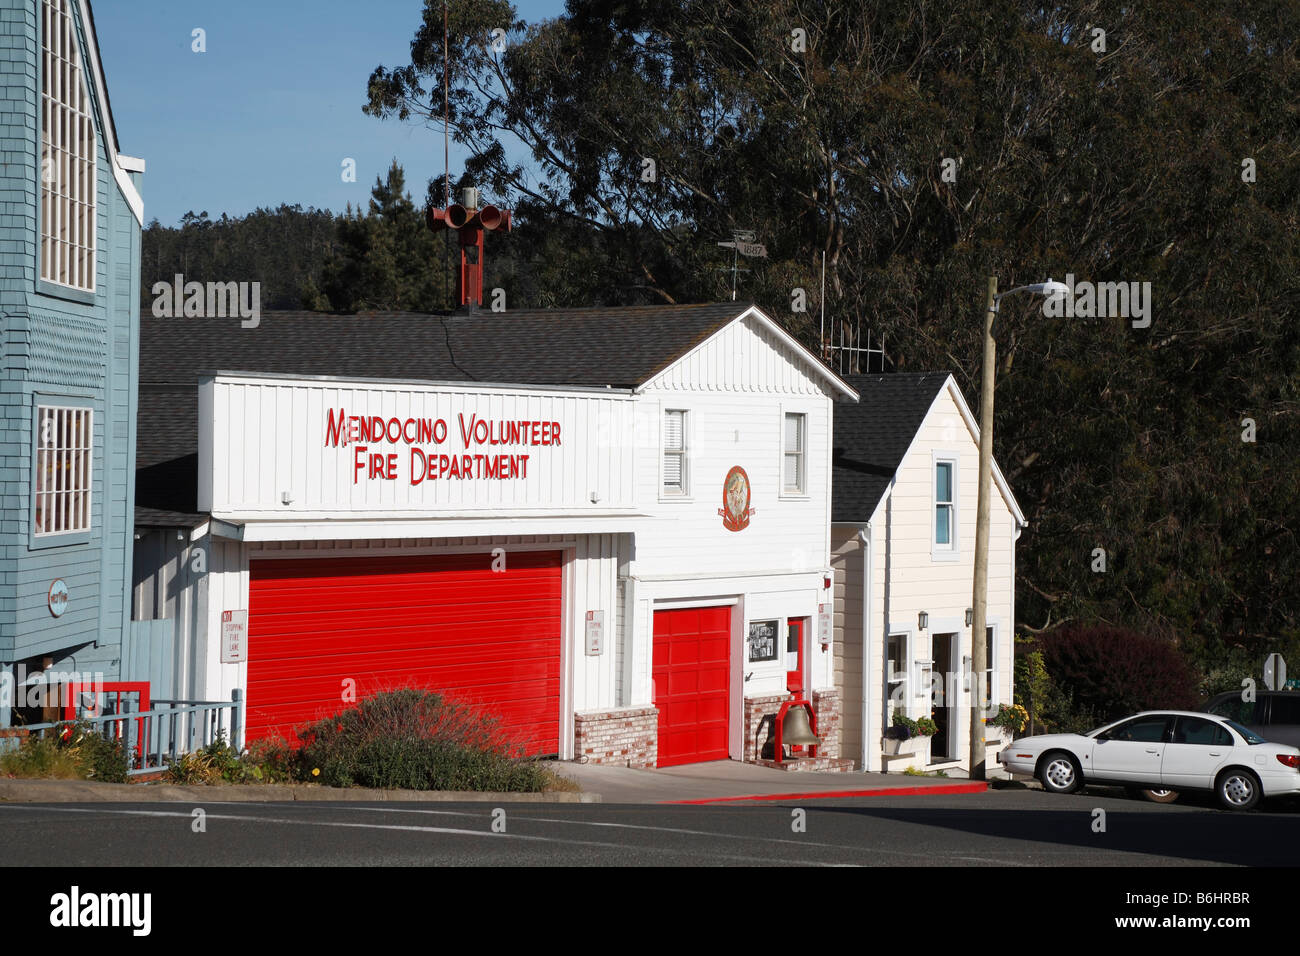 Caserne de pompiers Mendocino, Californie, États-Unis Banque D'Images